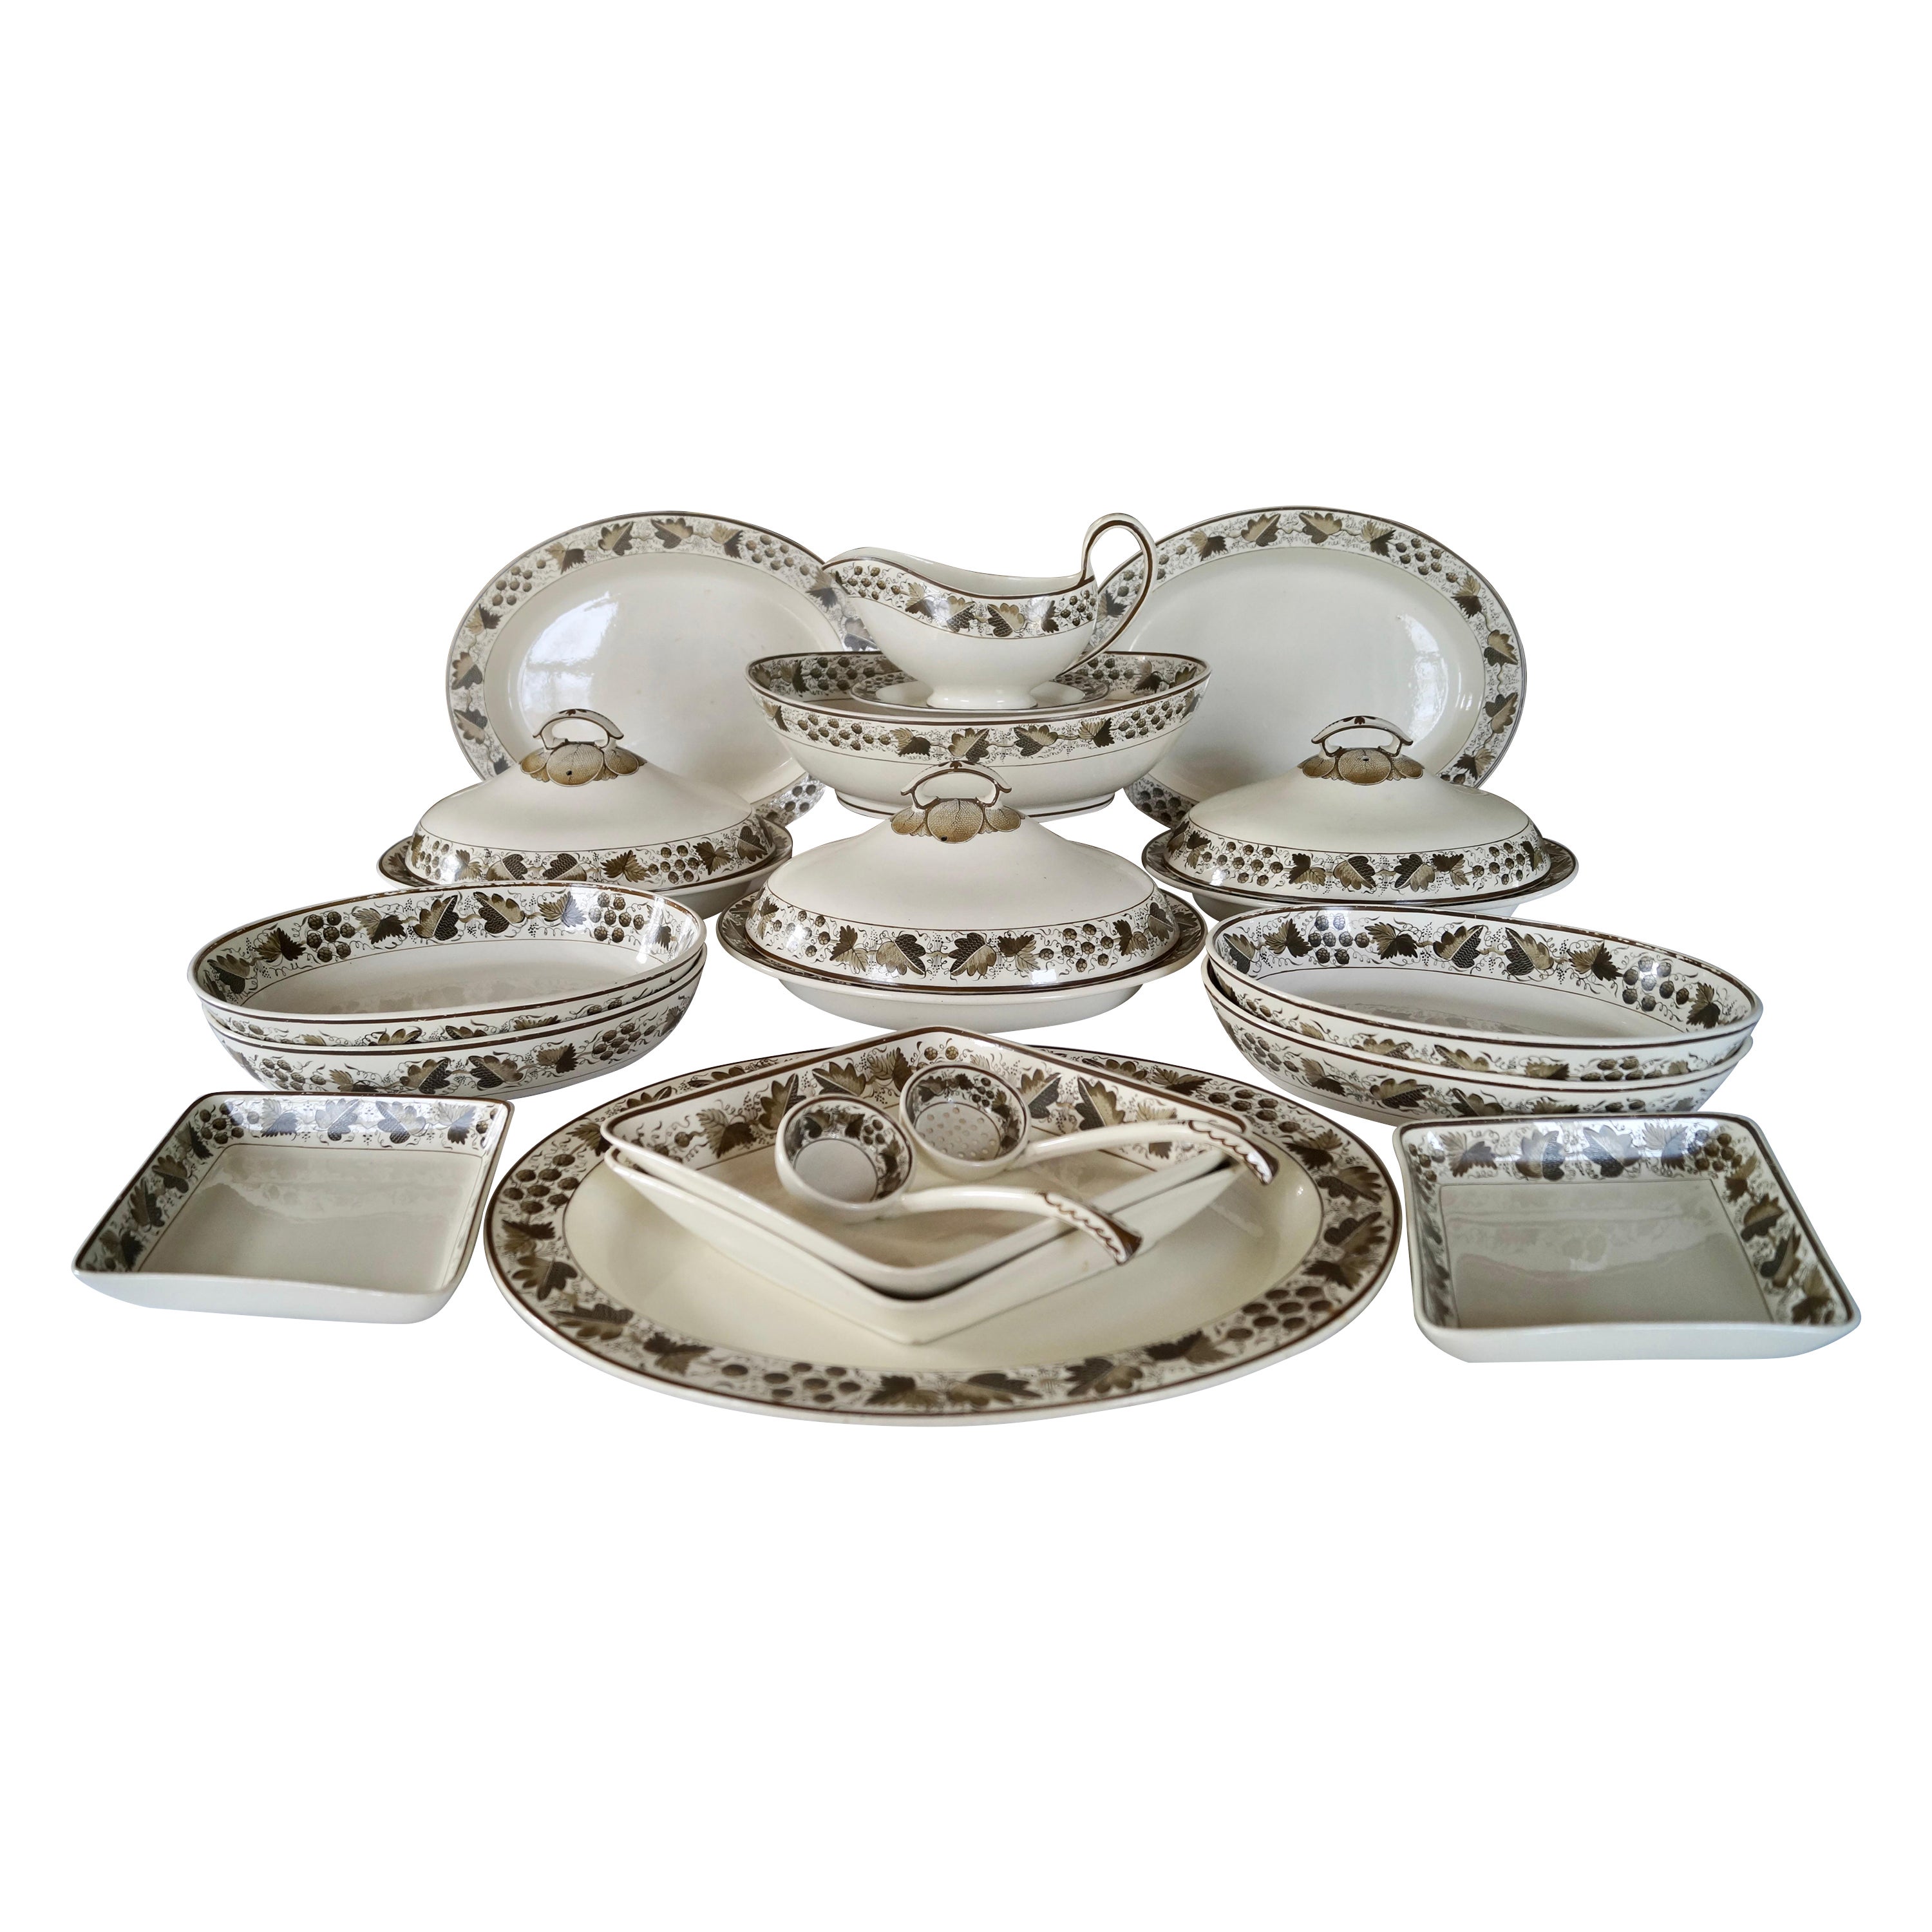 Magnifique et rare pièce de vaisselle ancienne Copeland Spode Creamware, datant d'environ 1800